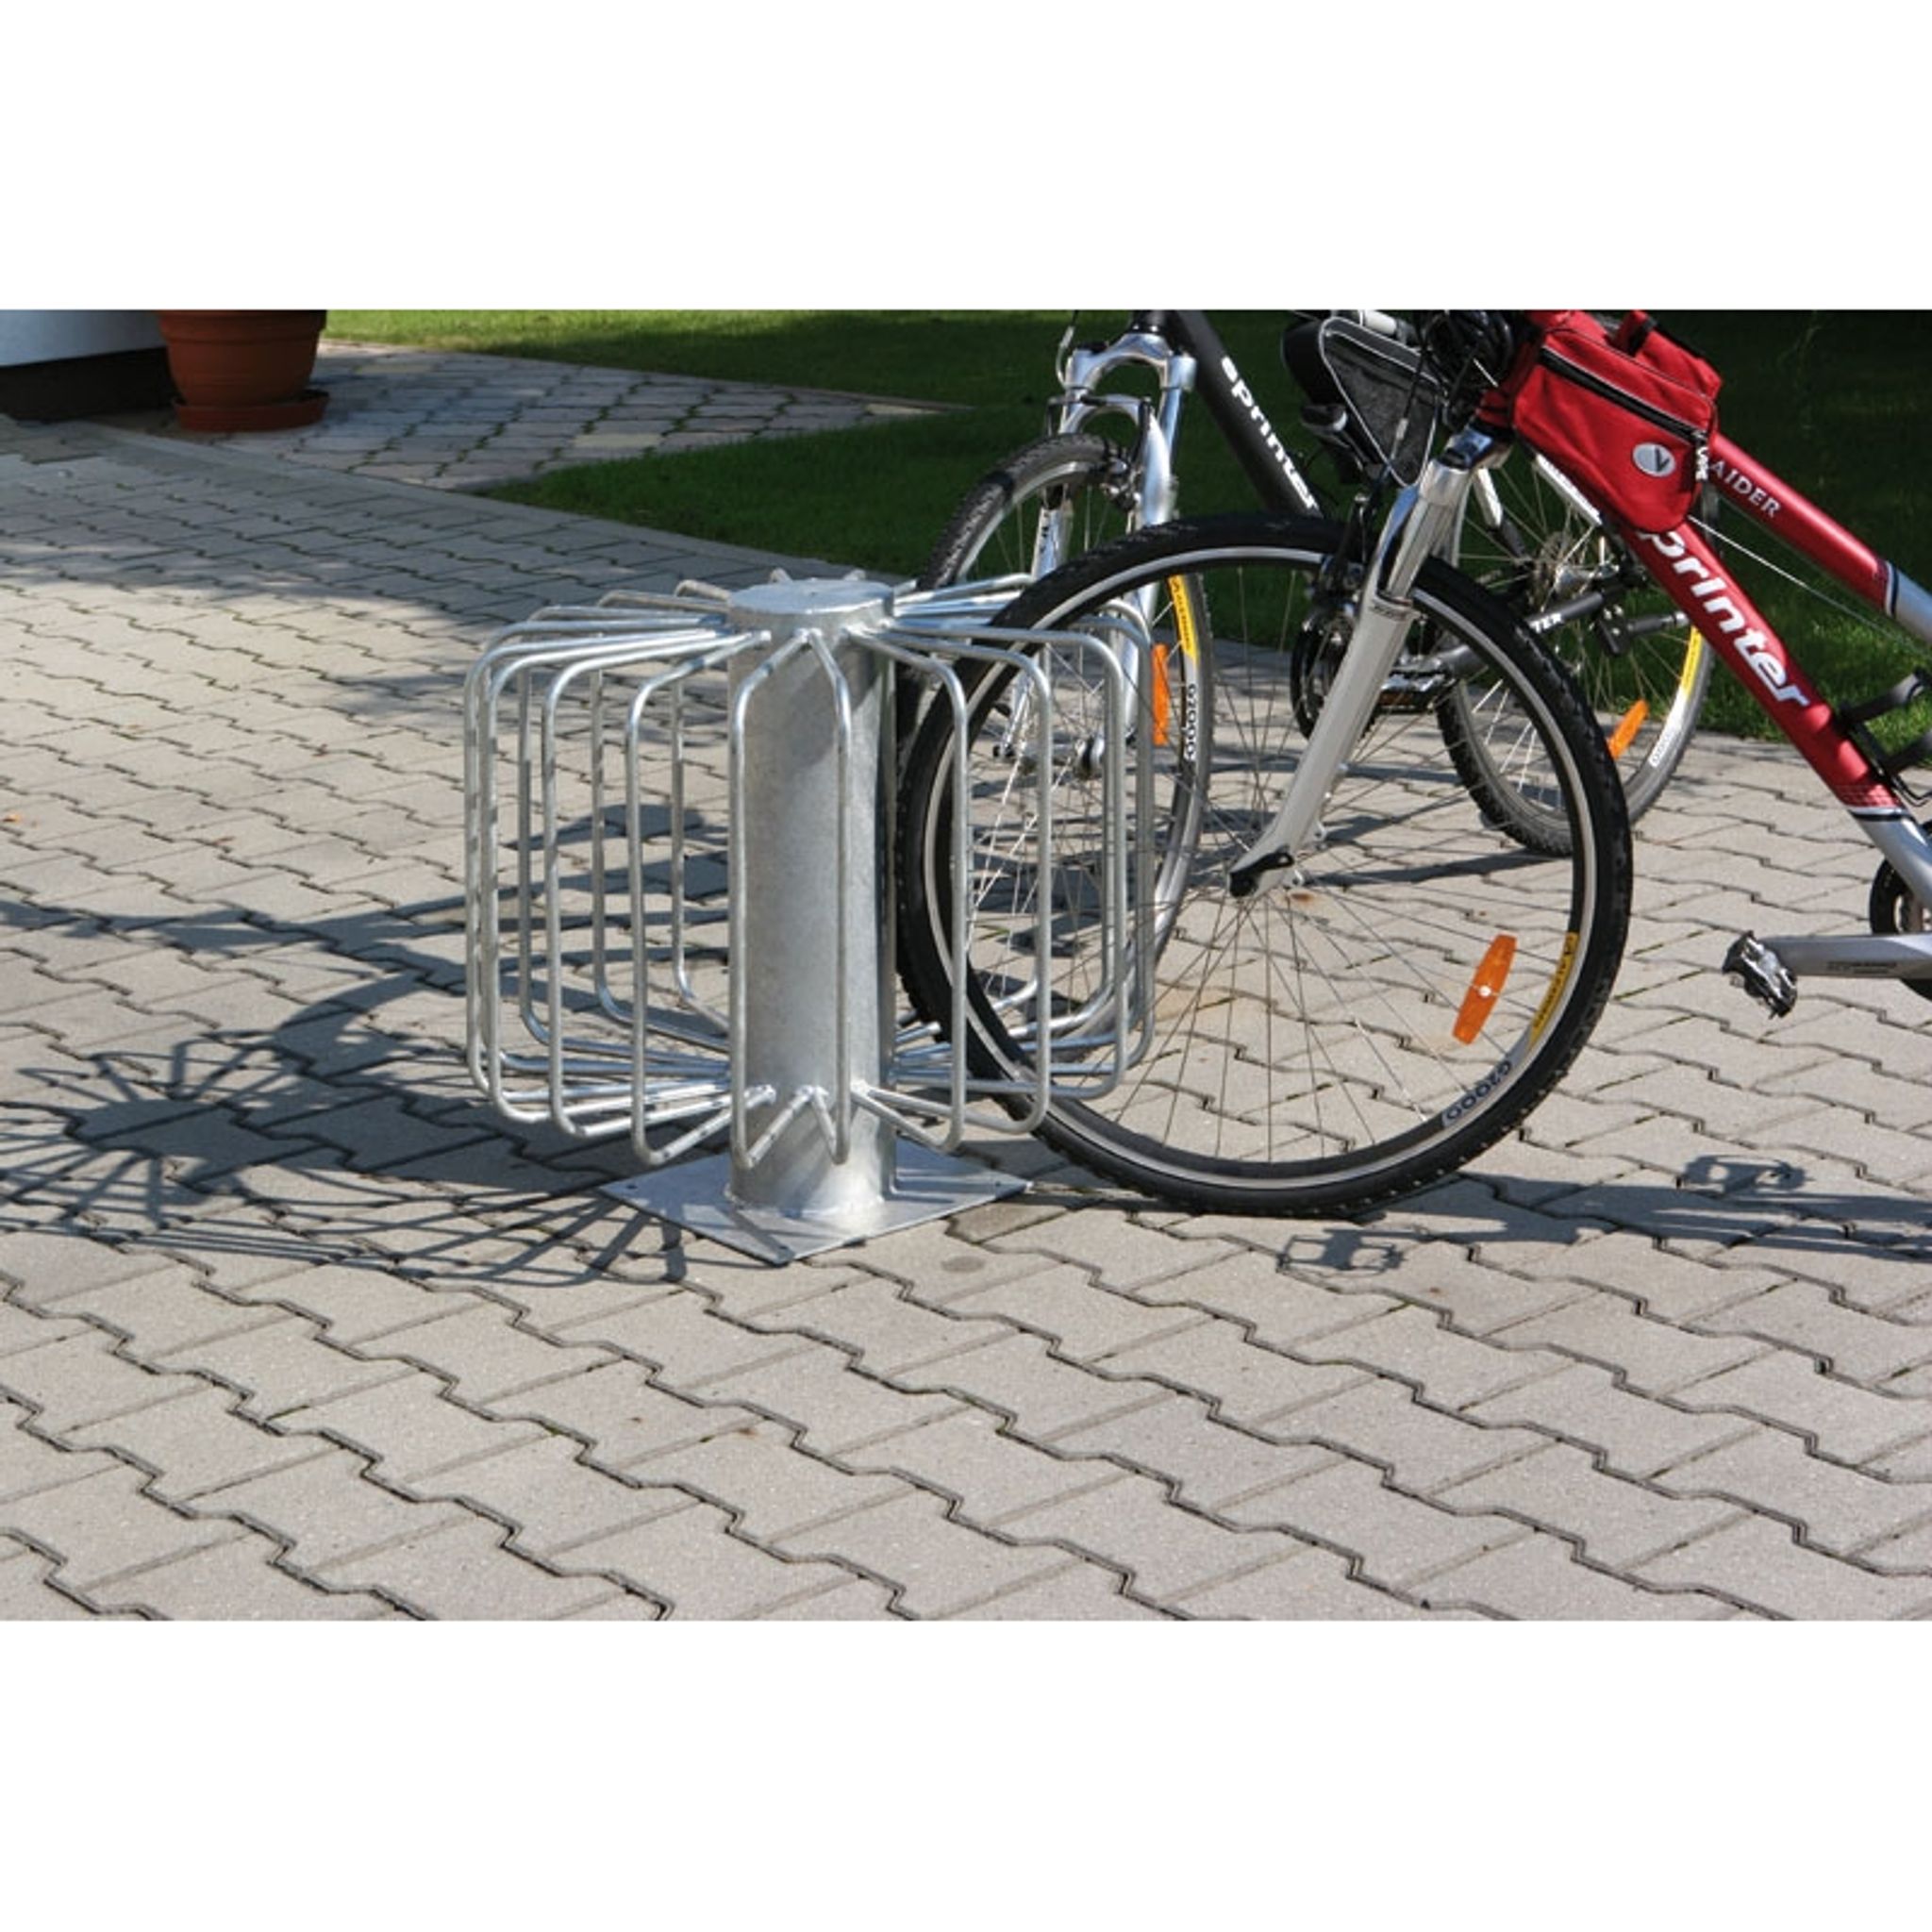 Fahrradständer für den Außenbereich, 360° auf dem Boden, für 10-18 Fahrräder